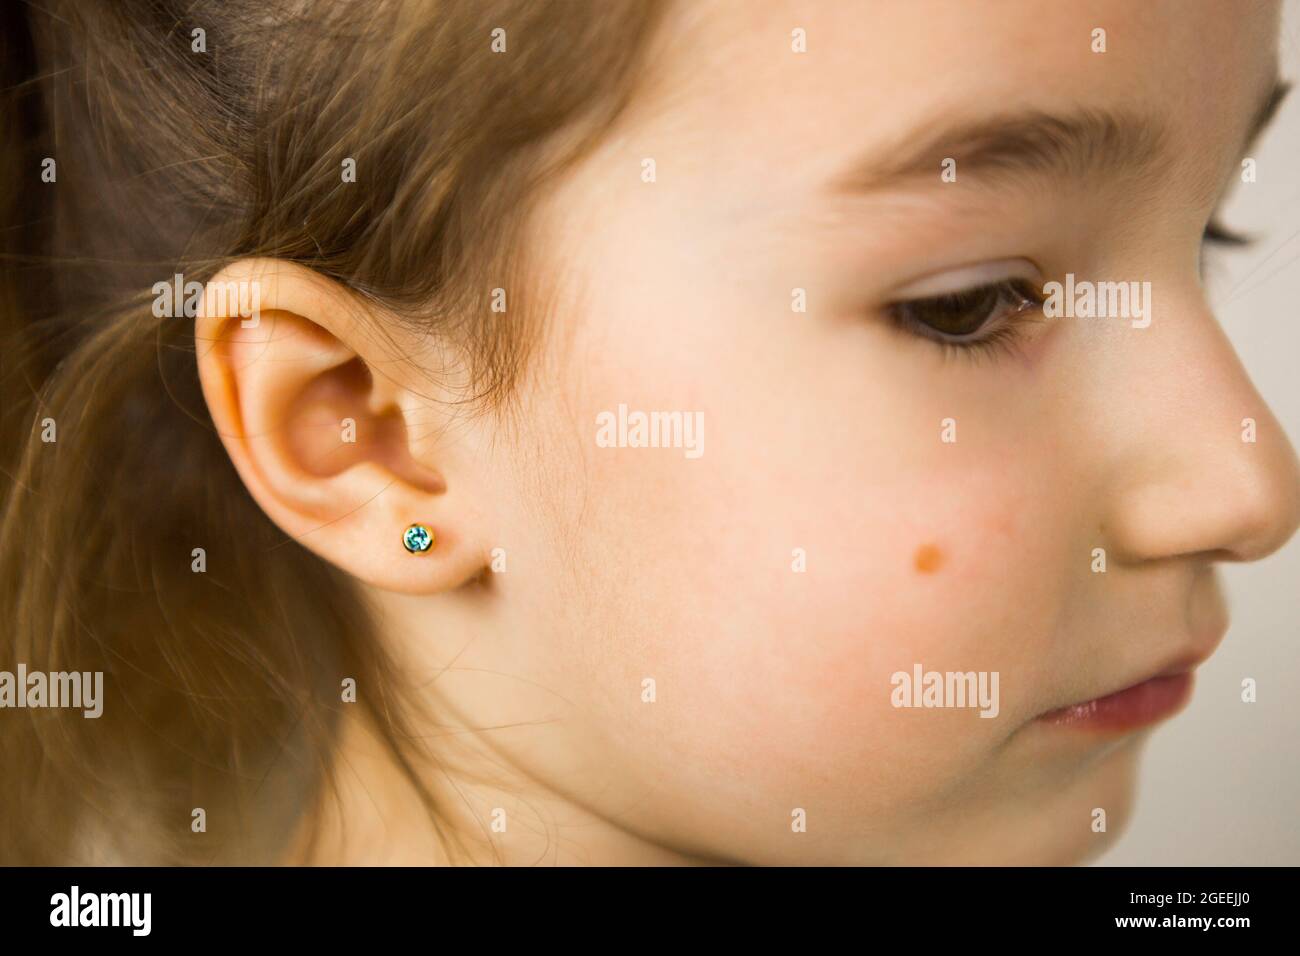 Piercing orecchio in un bambino - una ragazza mostra un orecchino in suo  orecchio fatto di una